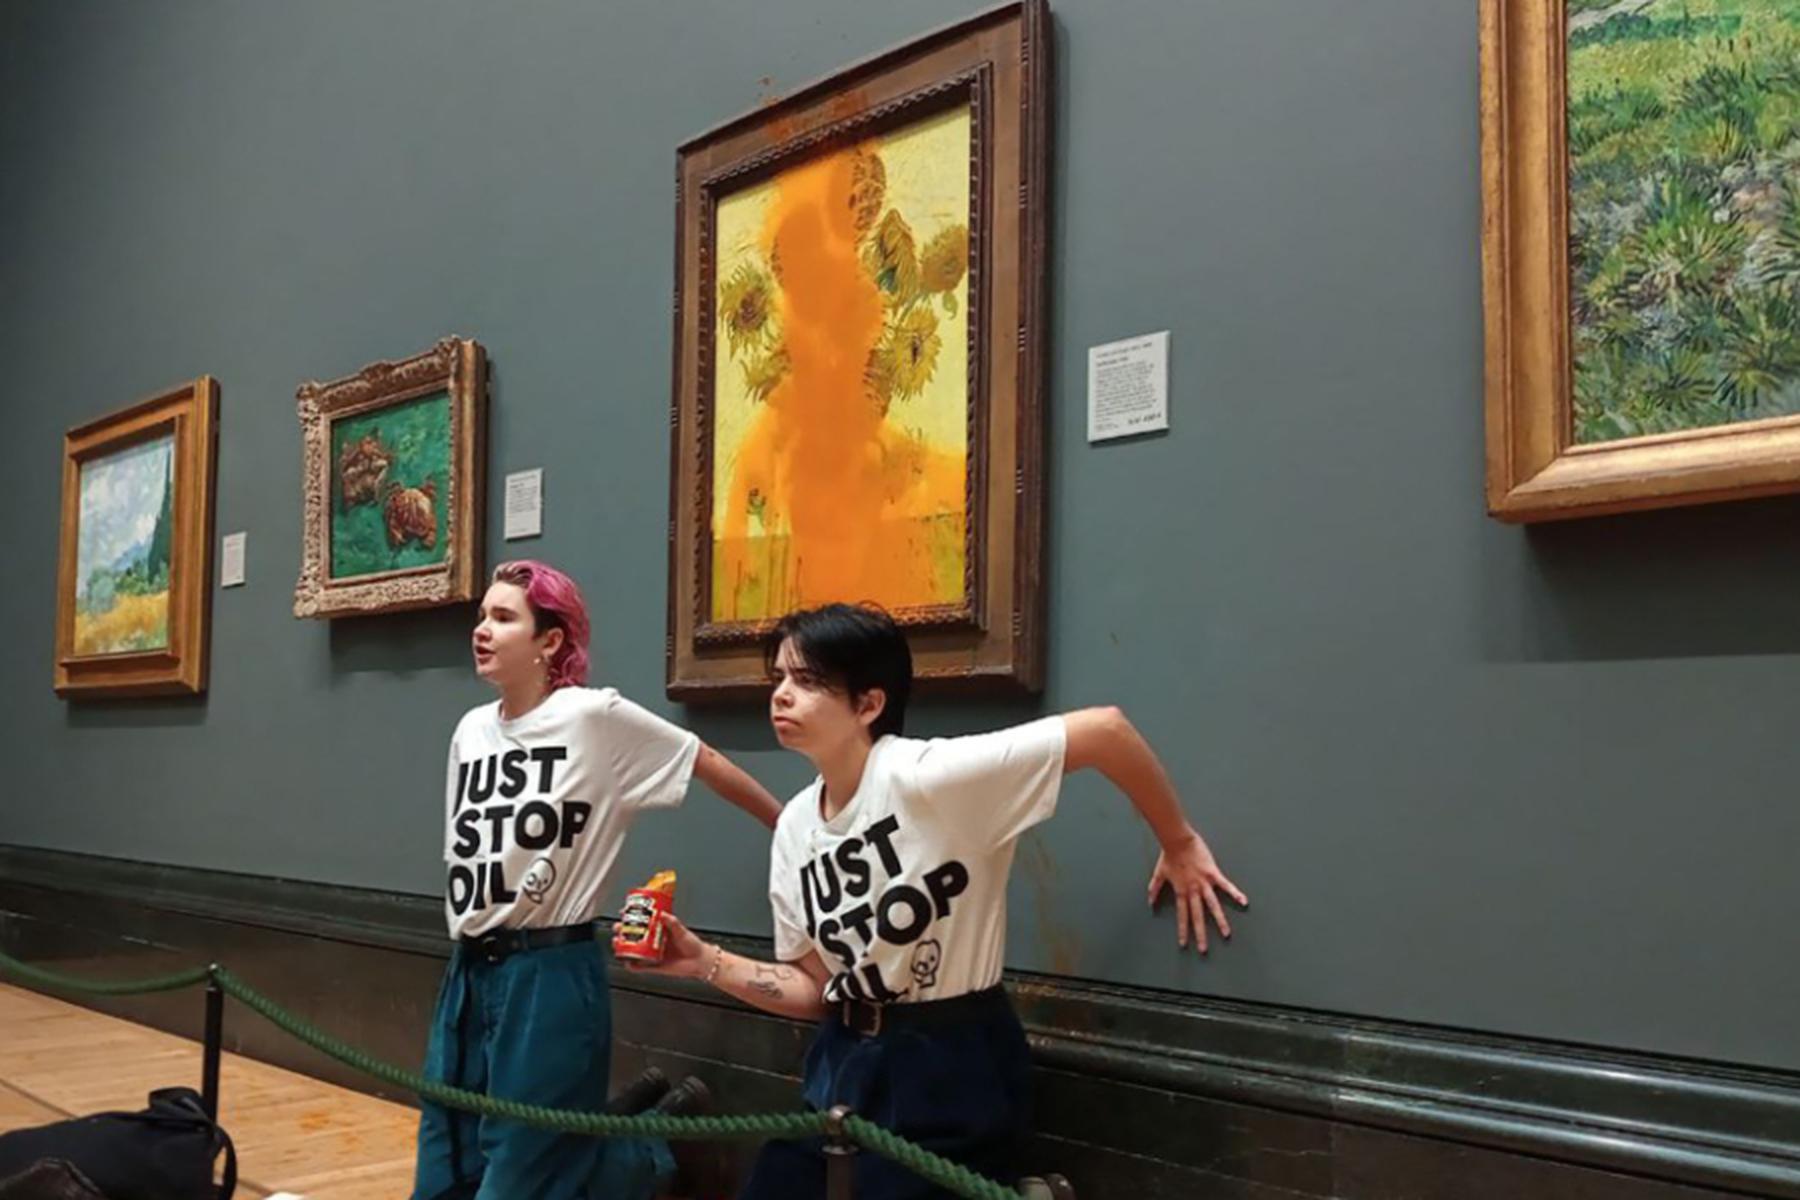 London: Schuldsprüche nach Attacke auf Van Gogh-Gemälde in London